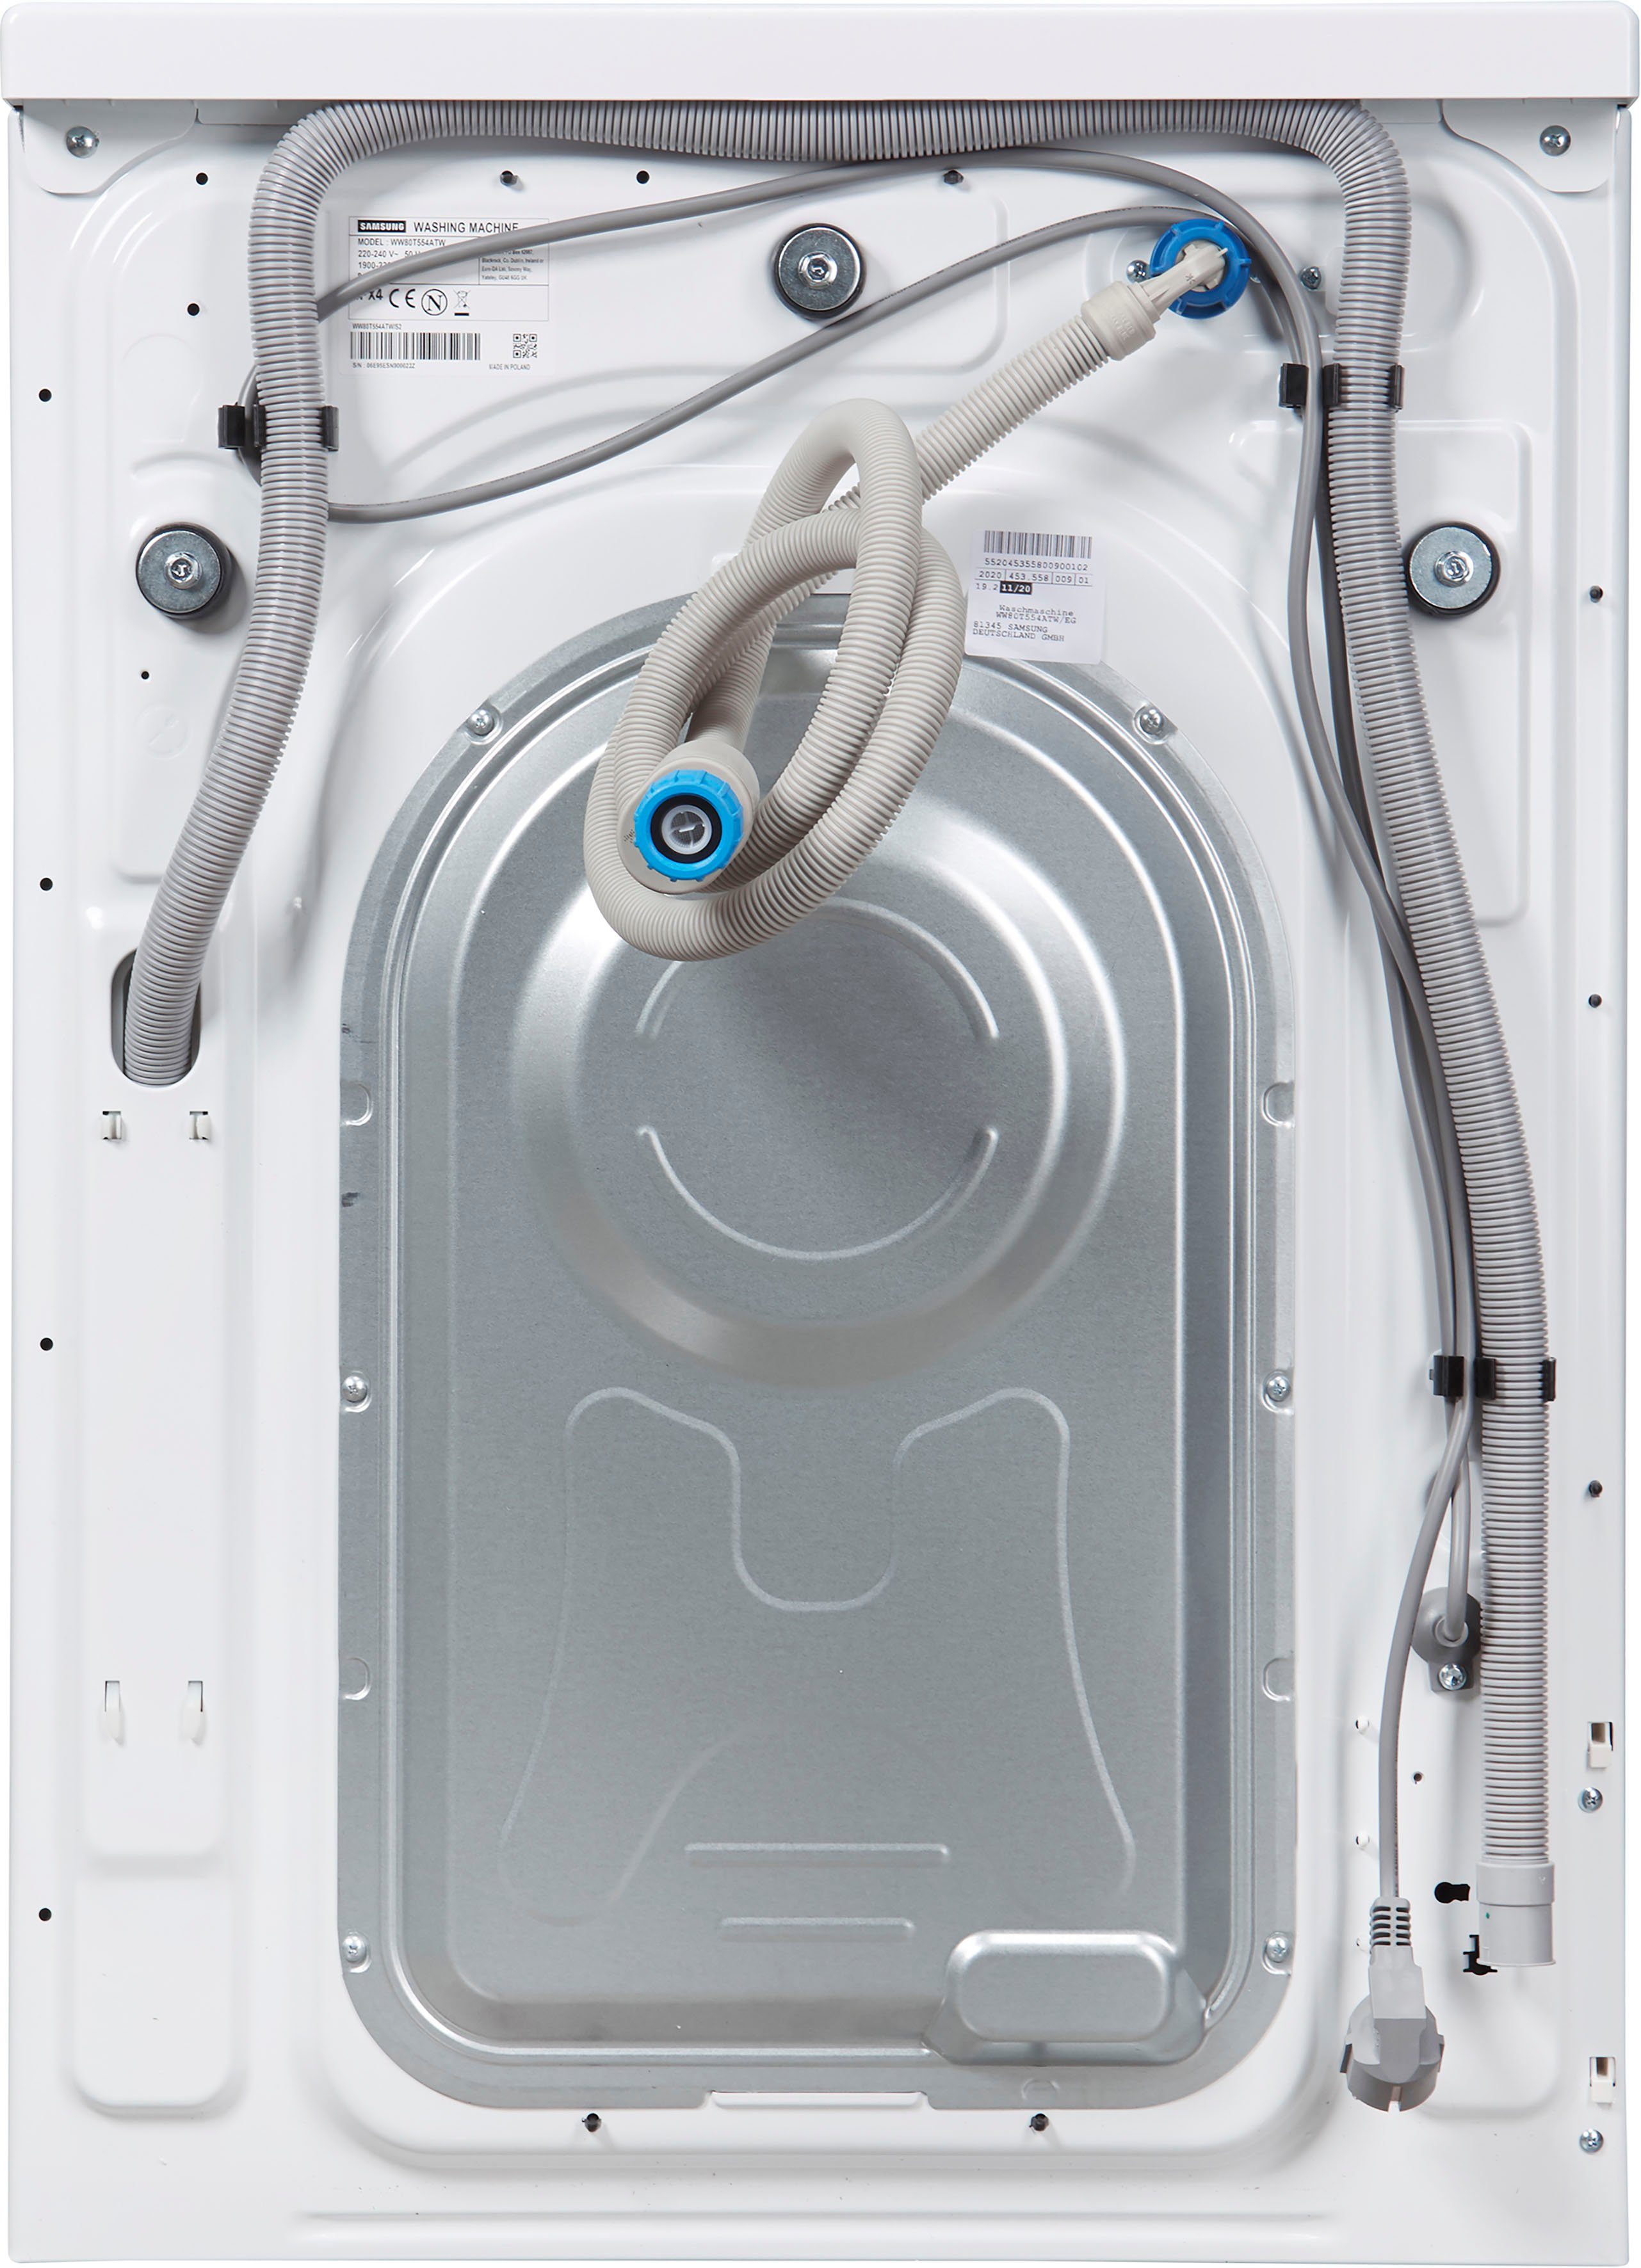 Samsung Waschmaschine WW5500T WW80T554ATW, 8 kg, 1400 U/min, AddWash™